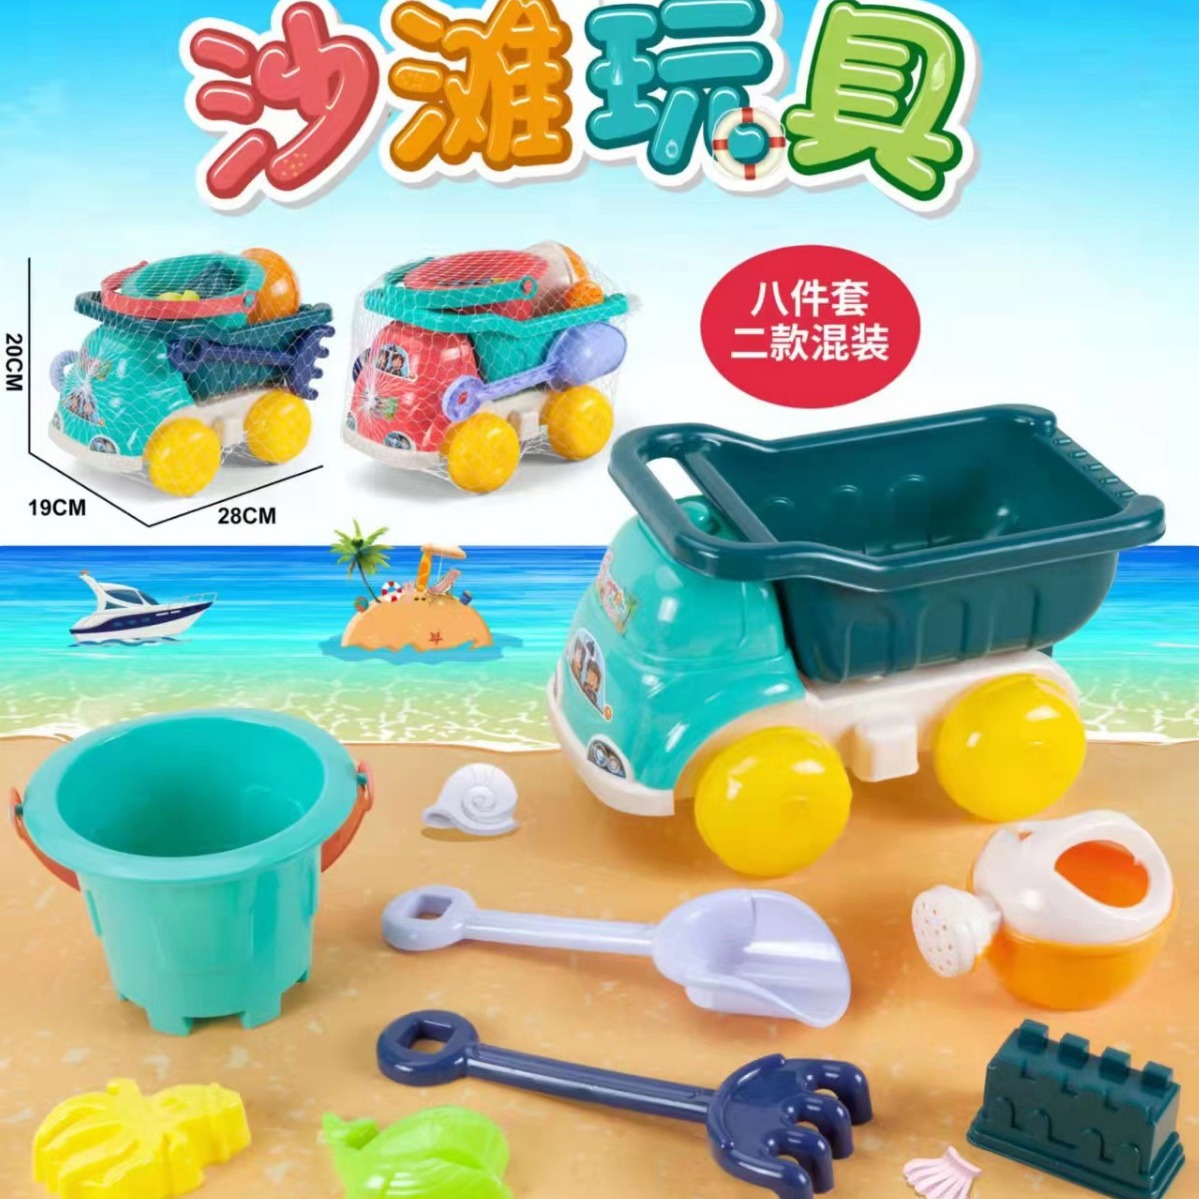 沙滩车儿童沙滩玩具沙滩桶玩沙漏玩沙戏水挖沙铲沙工具套装玩具